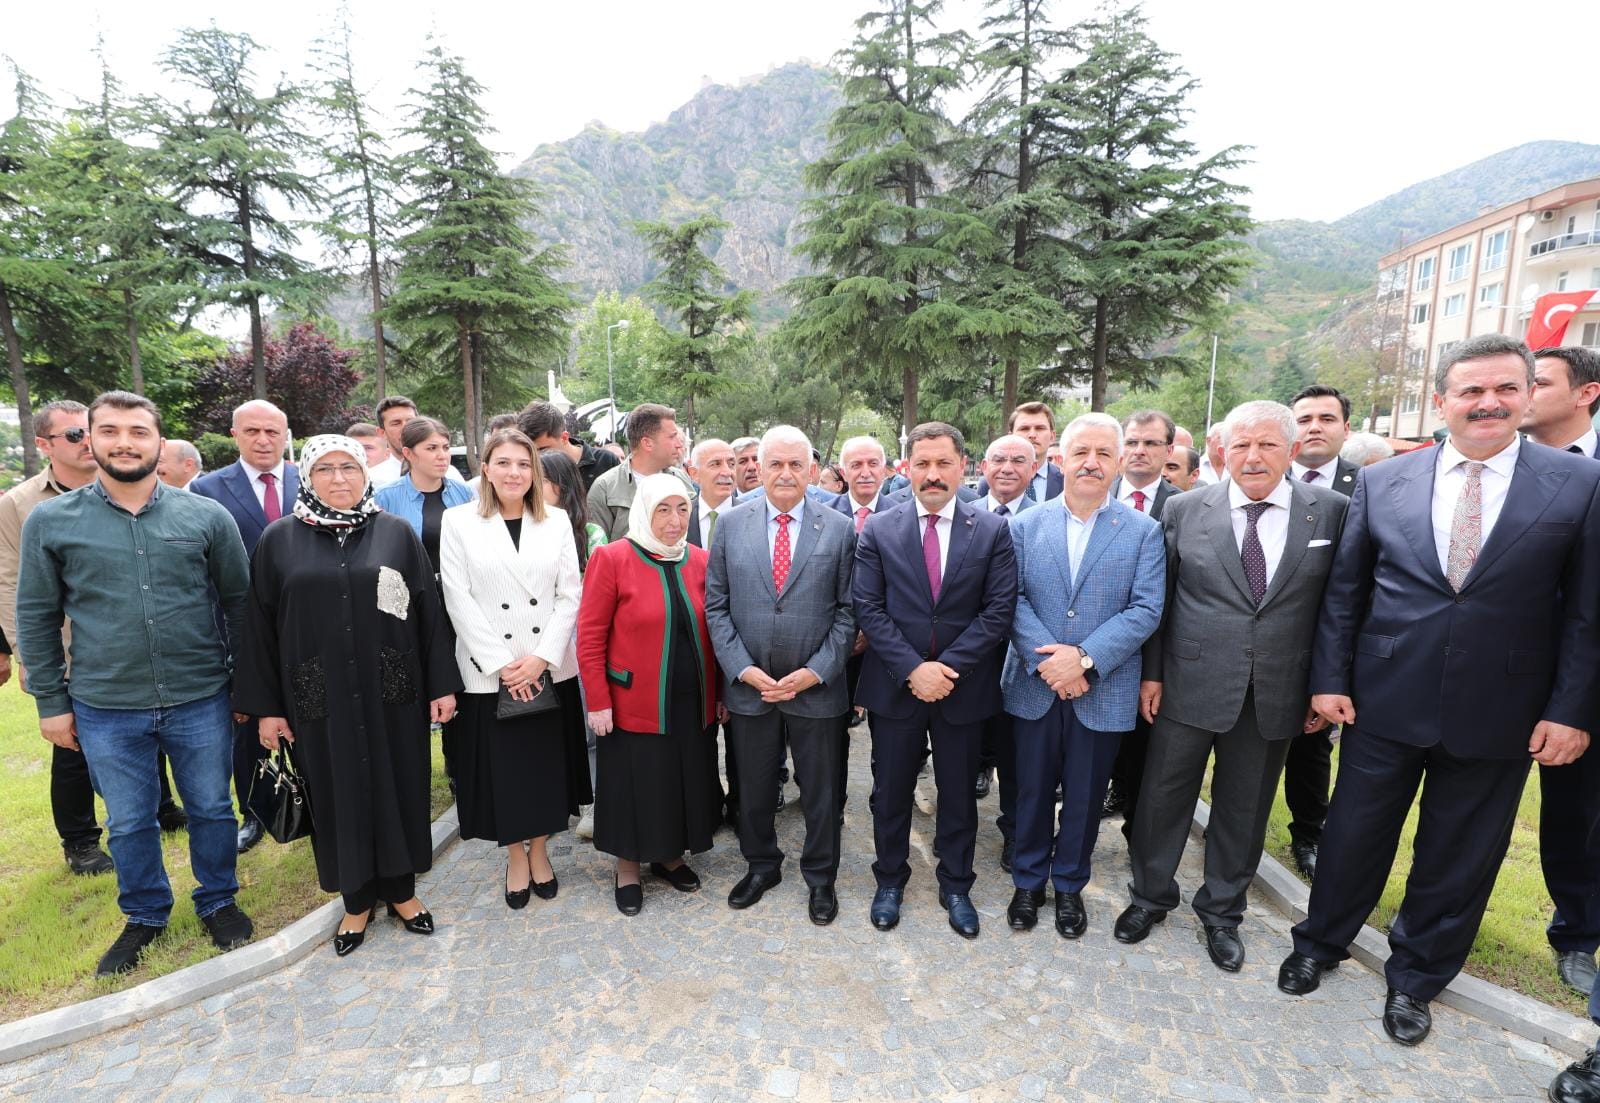 Eski Başbakanımız Binali YILDIRIM ile Semiha YILDIRIM Hanımefendi’nin Teşrifleriyle, Geleneksel Türk El Sanatları Merkezi Hizmete Açıldı